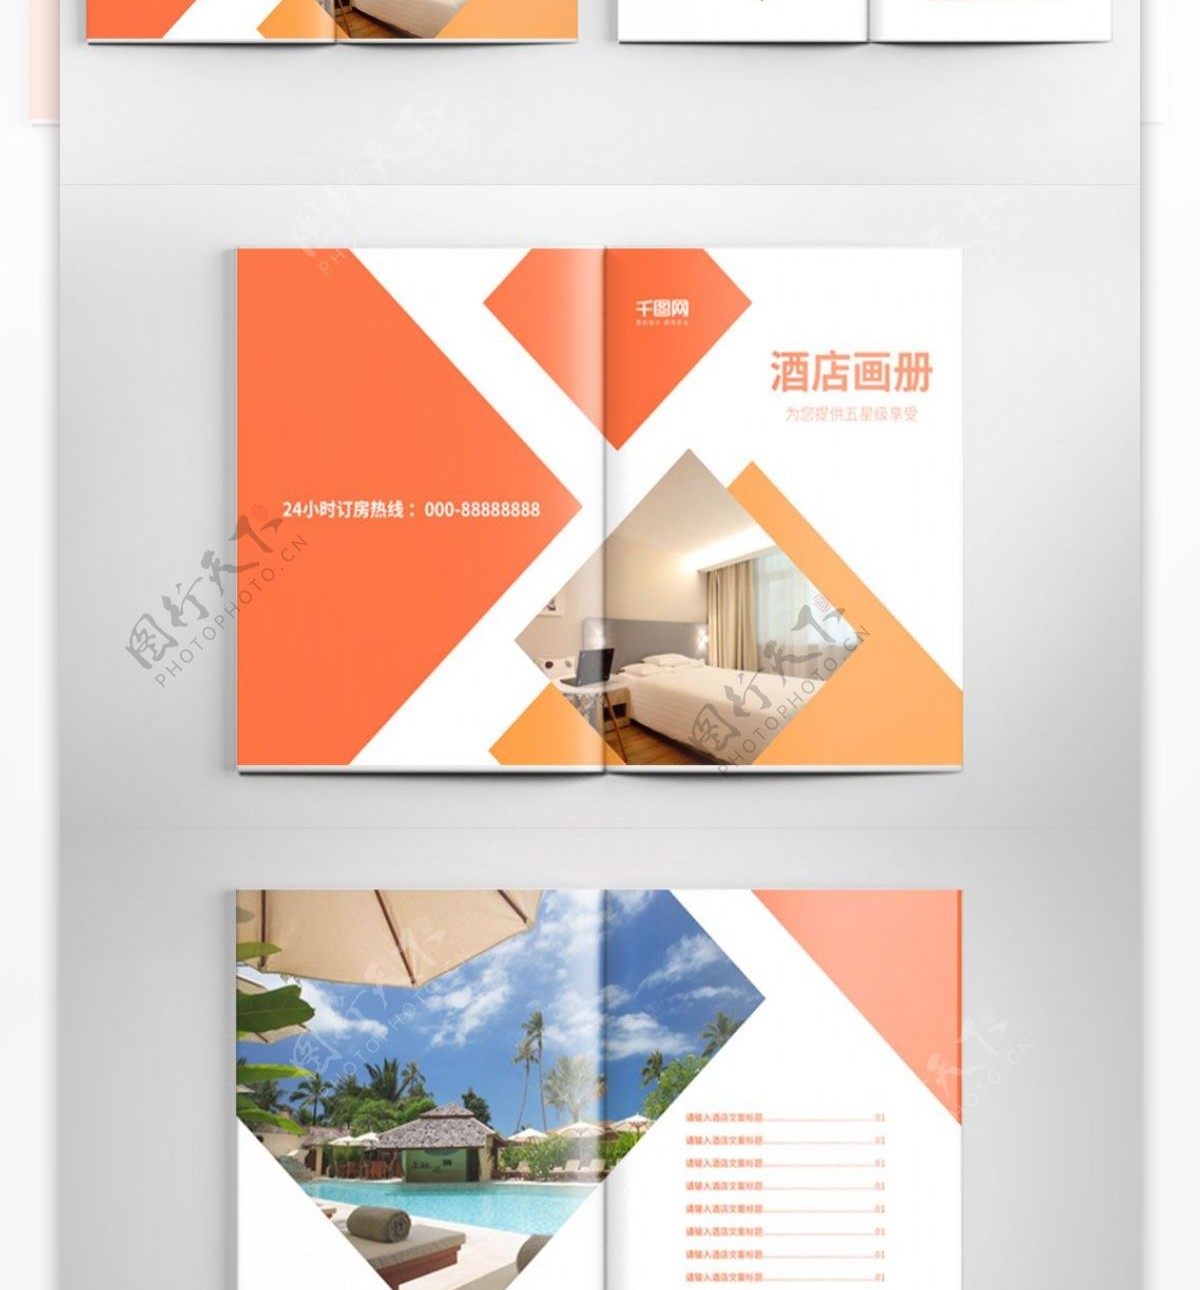 大气简约酒店宣传册时尚画册设计PSD模板